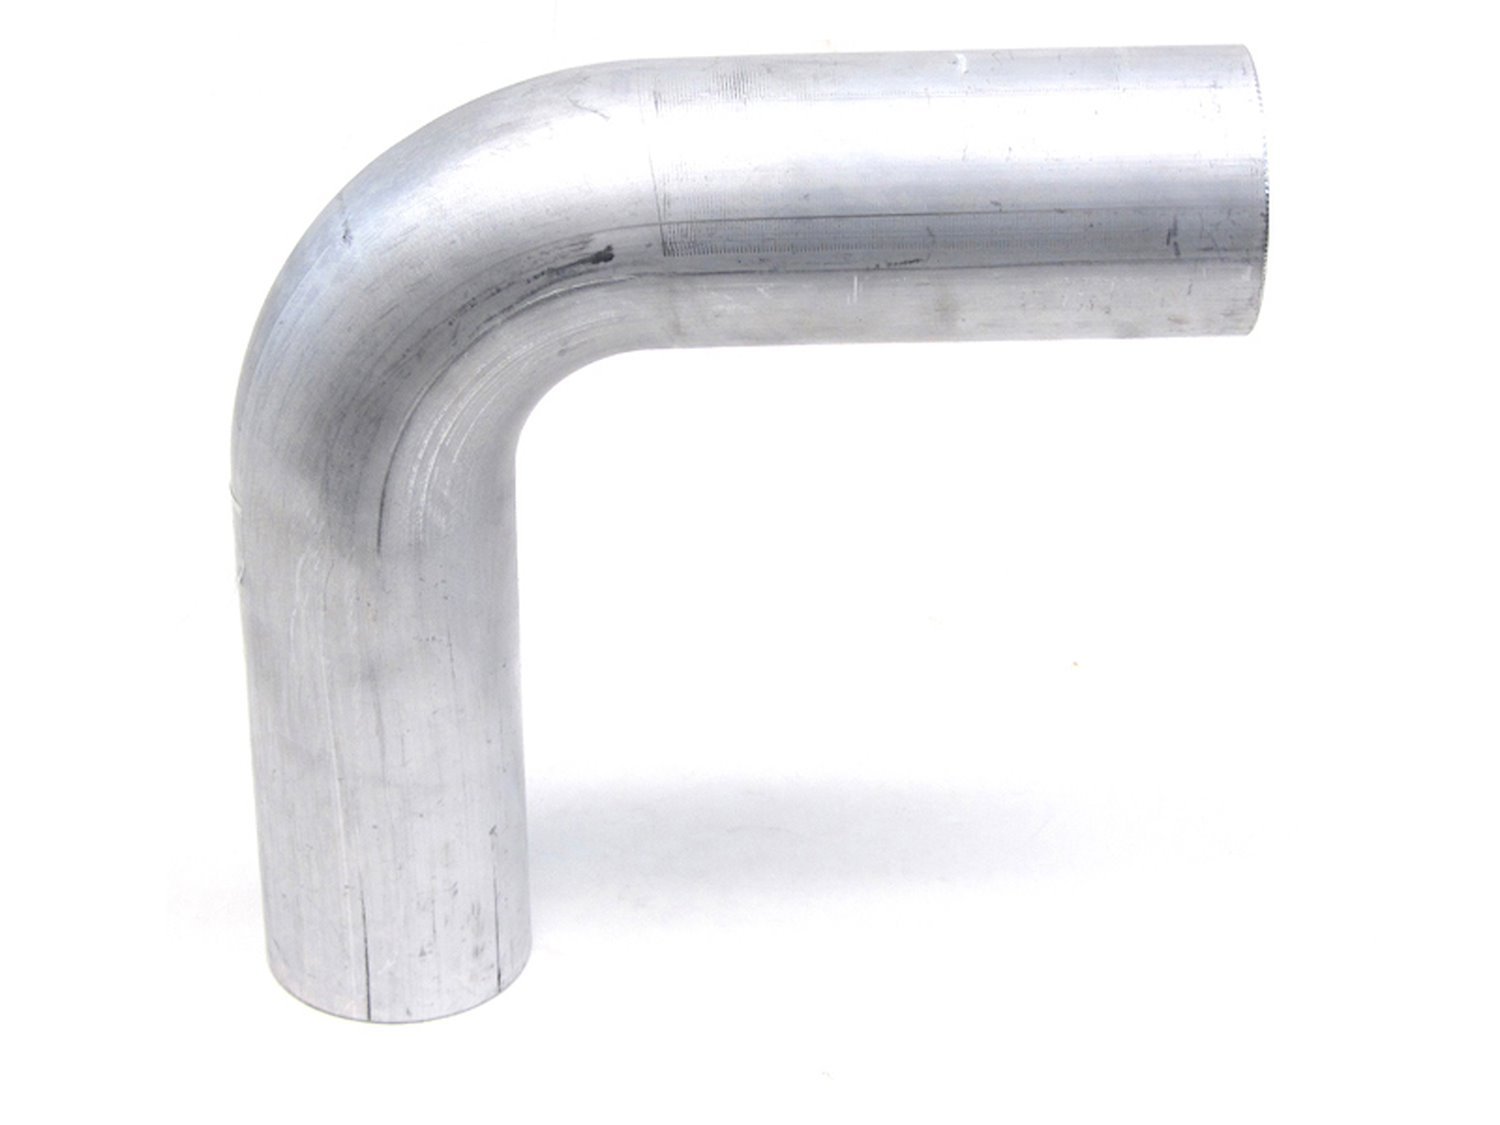 AT90-138-CLR-25 Aluminum Elbow Tube, 6061 Aluminum, 90-Degree Bend Elbow Tubing, 1-3/8 in. OD, Tight Radius, 2-1/2 in. CLR